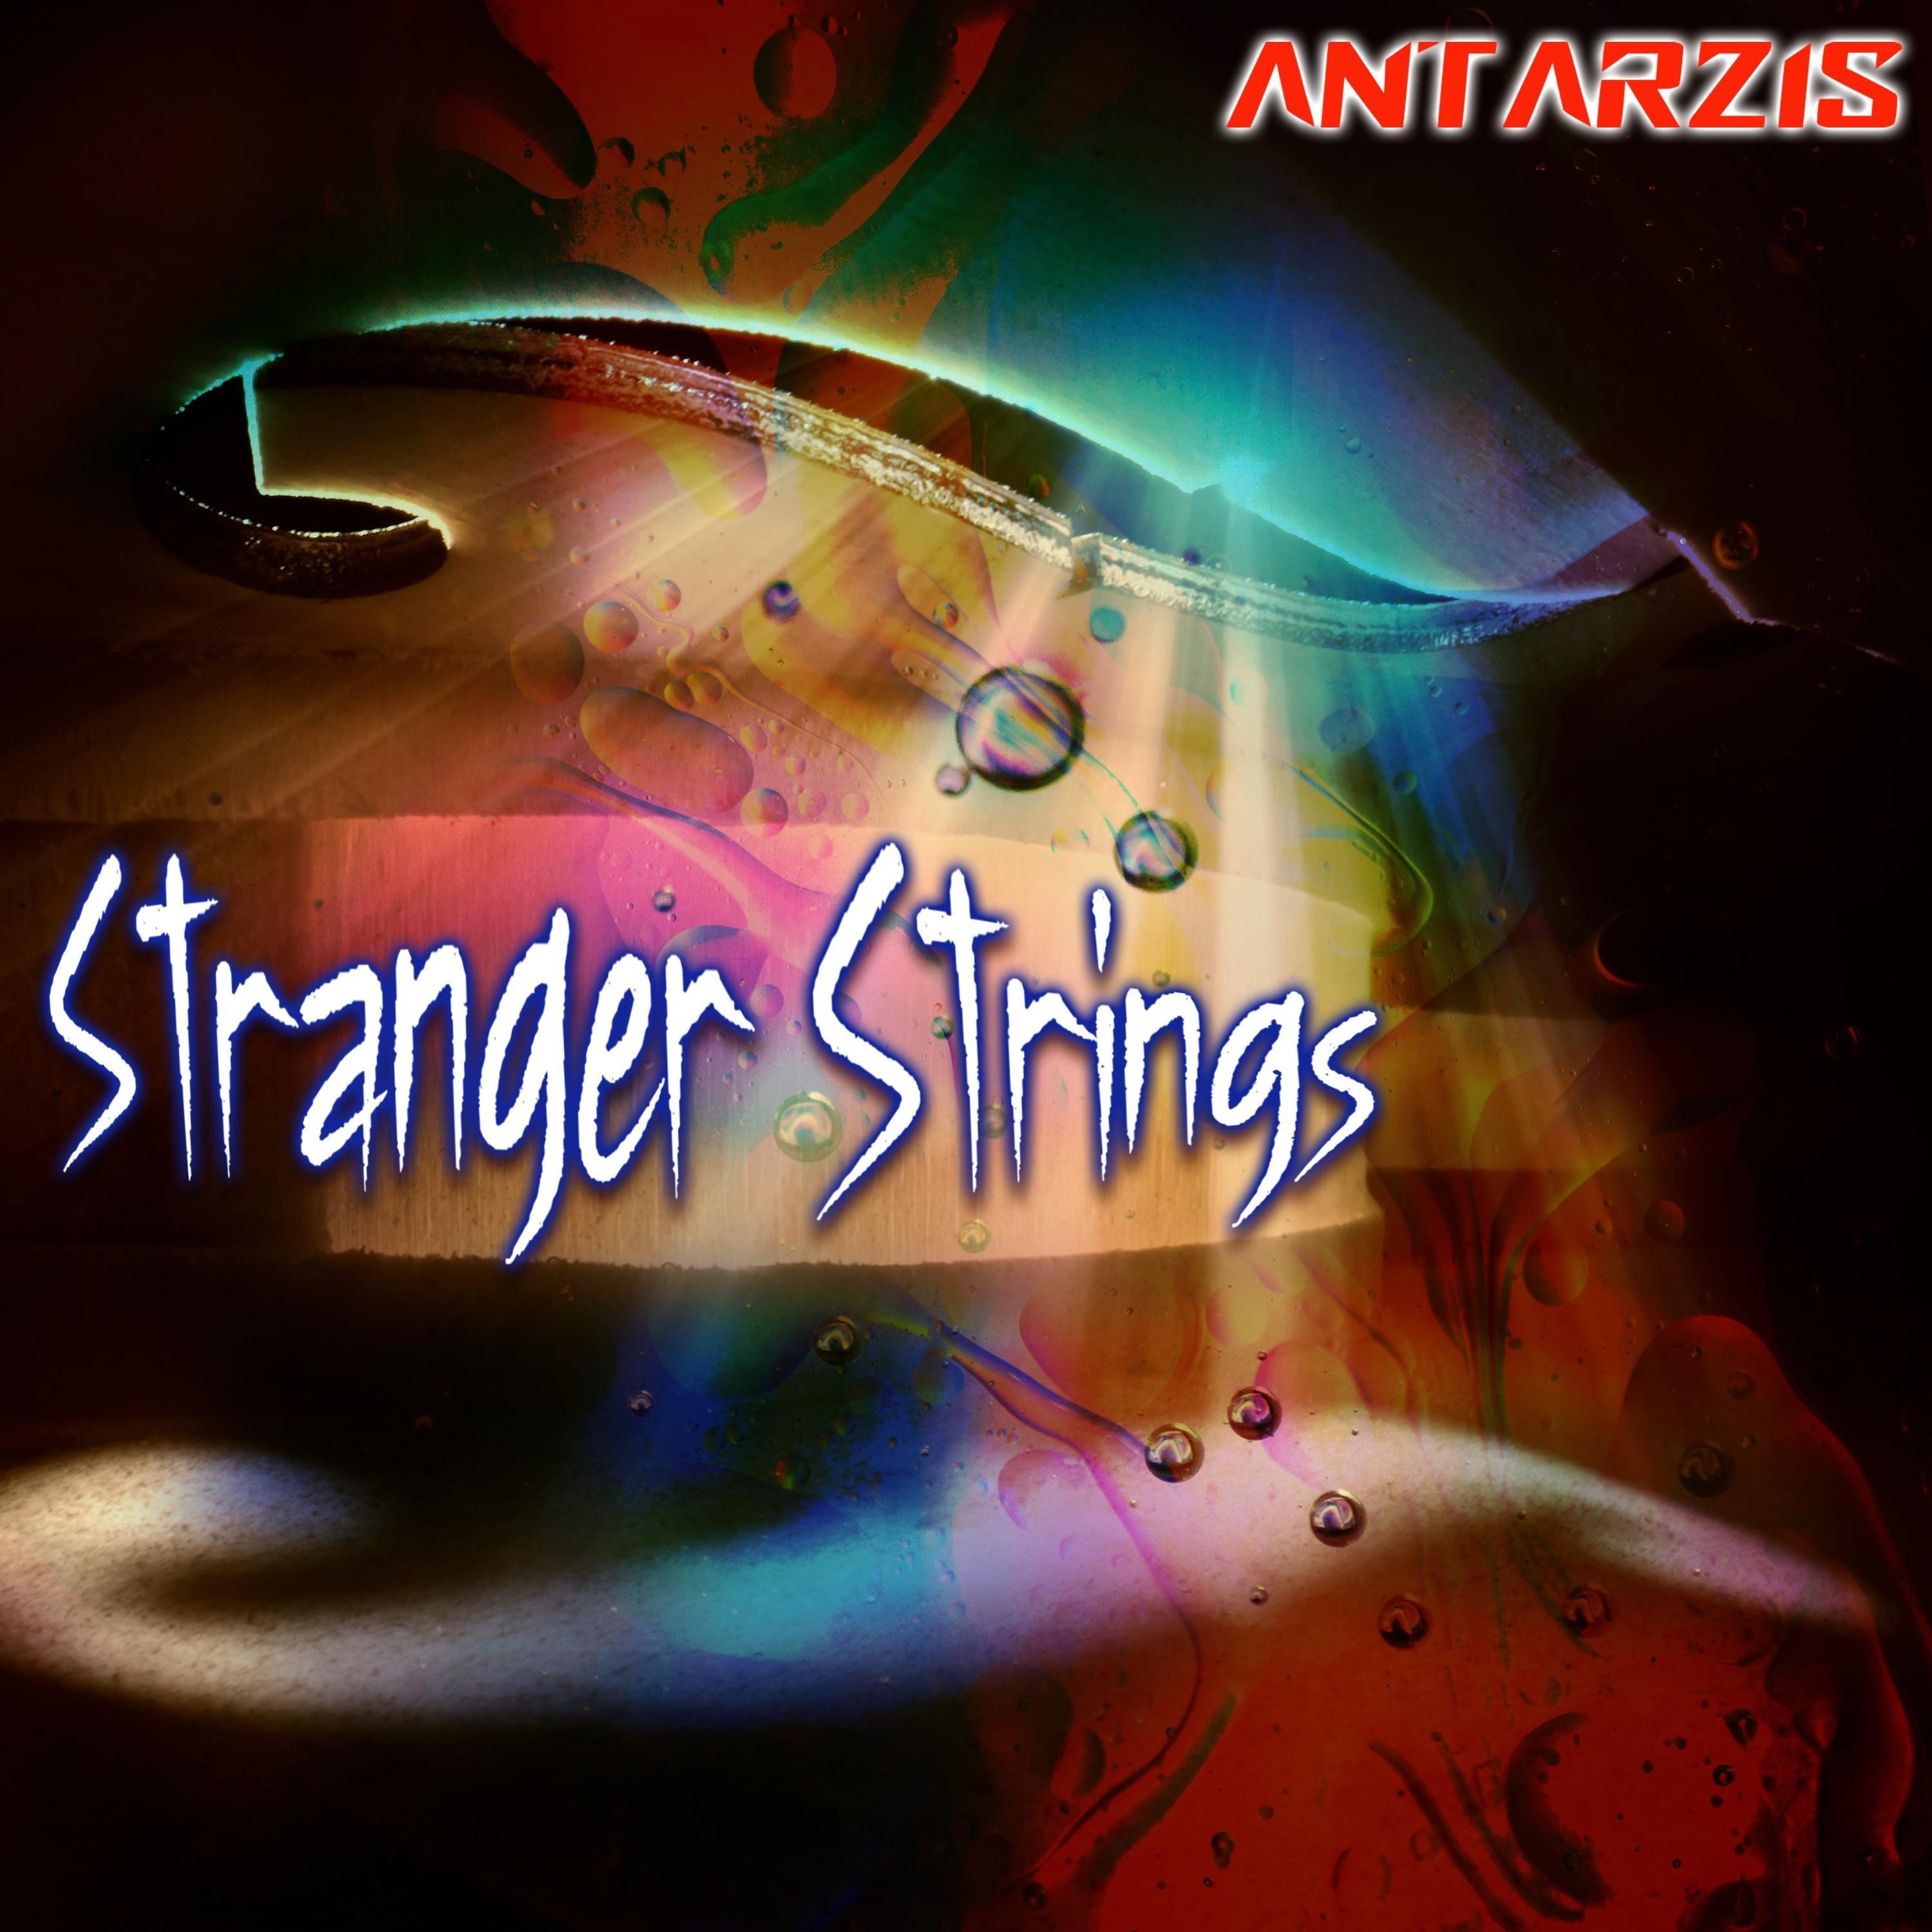 Stranger Strings